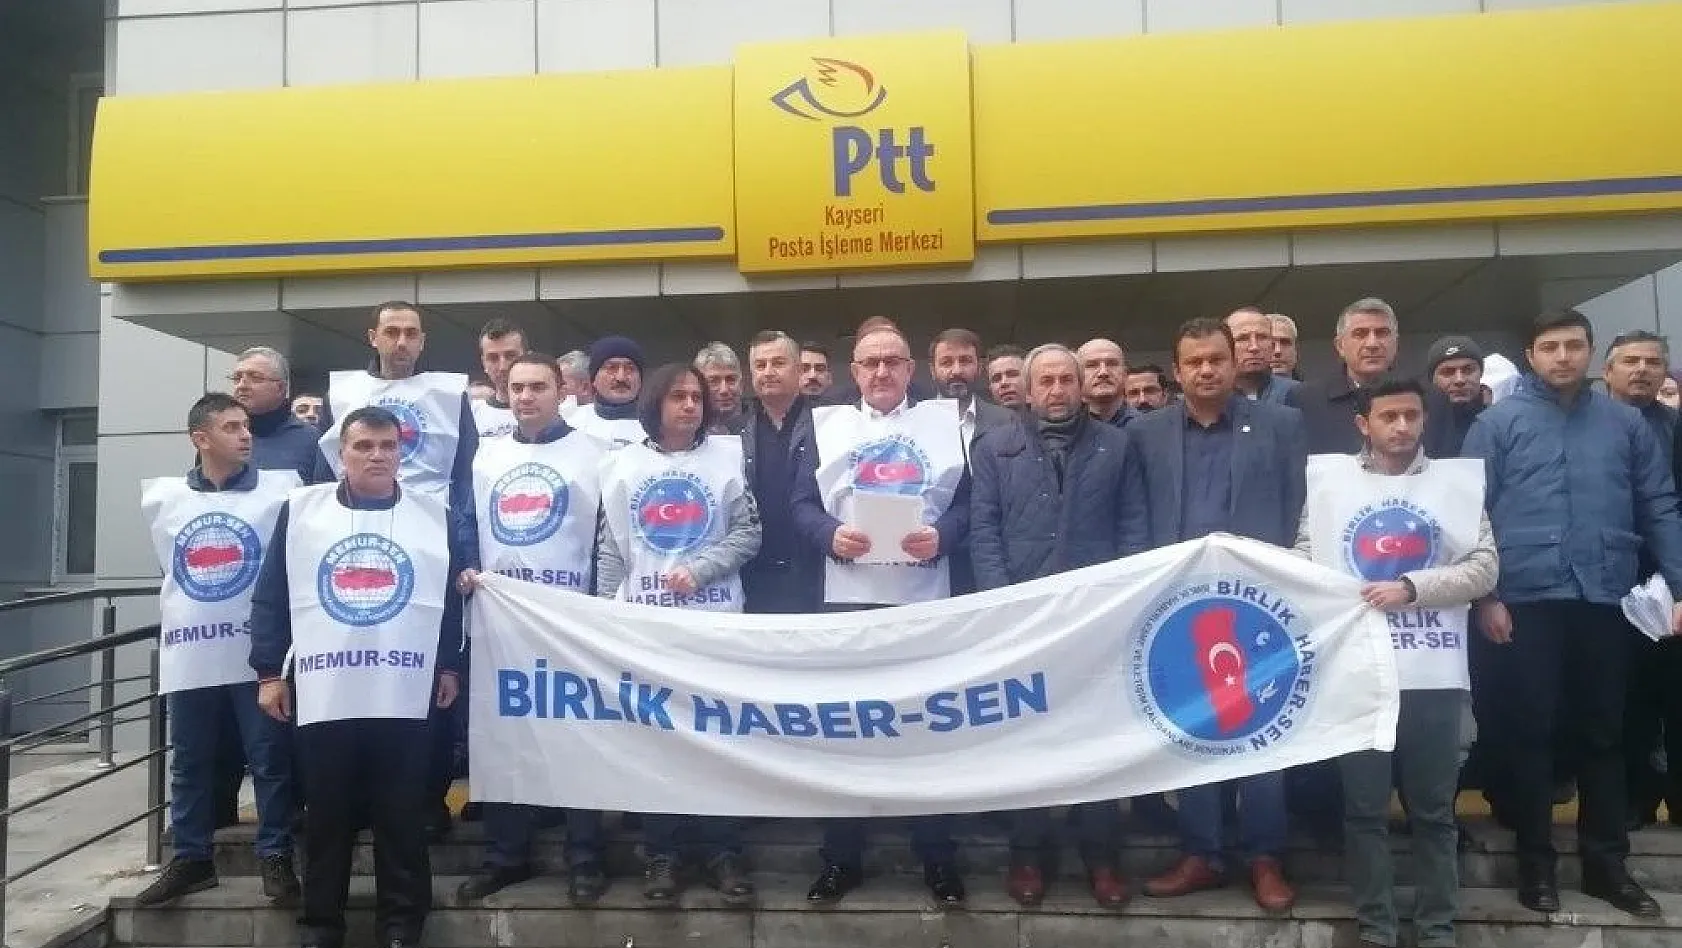 Birlik Haber Sen Kayseri Şube Başkanı Mehmet Taş: 'PTT personelleri çözüm beklemekten bıktı'
